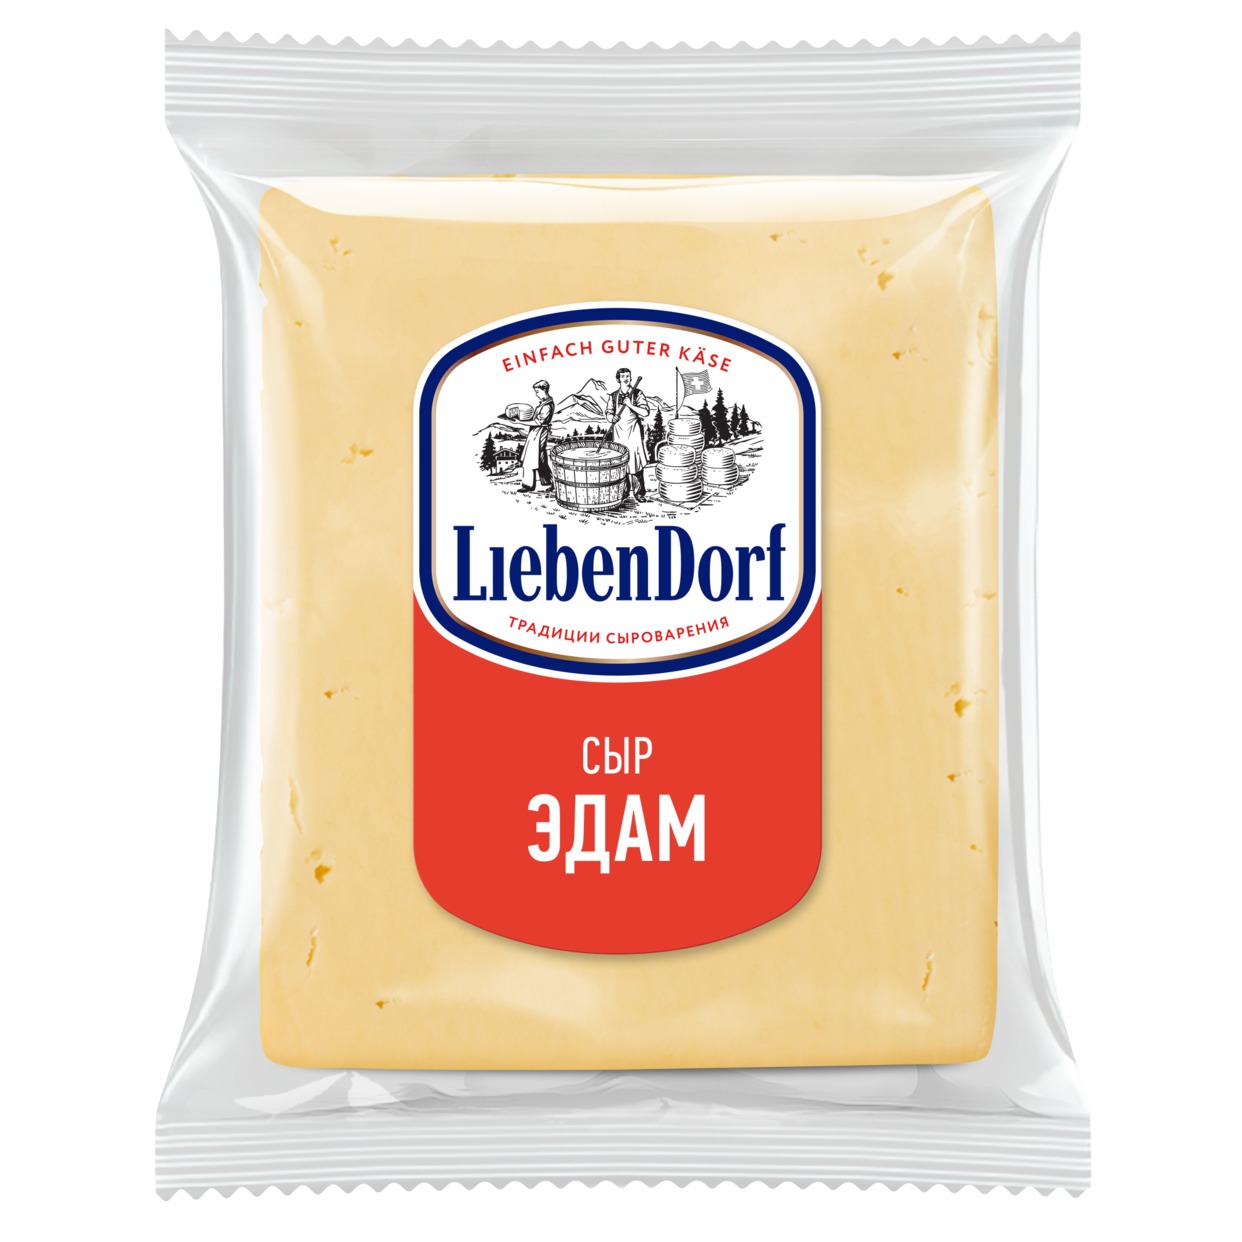 Сыр Liebendorf, Эдам, фасованный, 1 кг по акции в Пятерочке